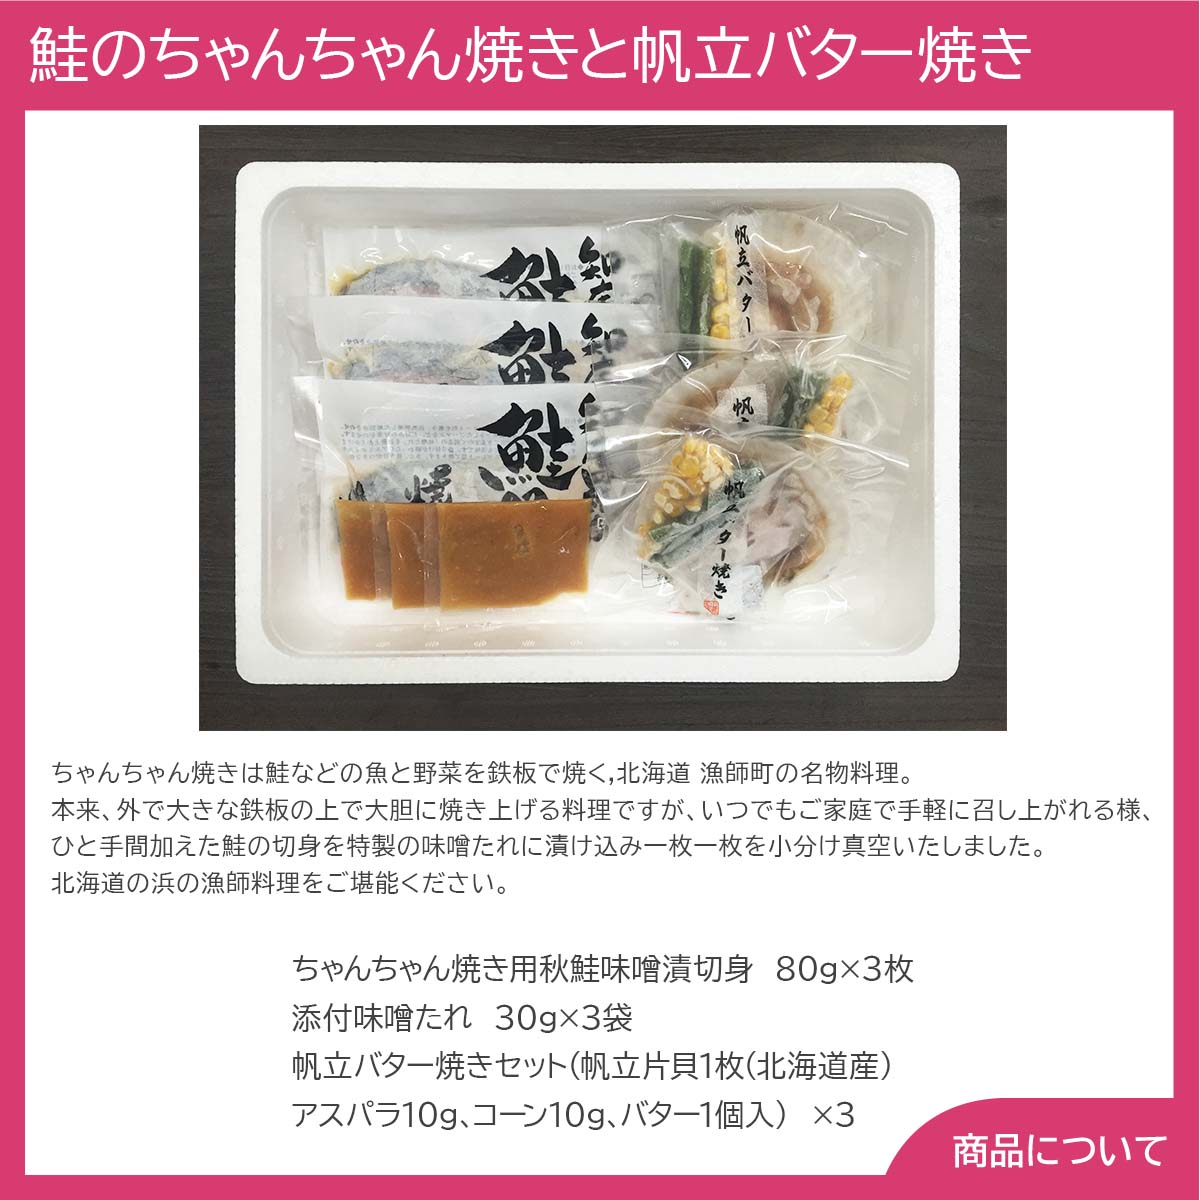 北海道 鮭のちゃんちゃん焼きと帆立バター焼き Eセット(切身80g×8枚、帆立バター焼き) ギフト グルメ 